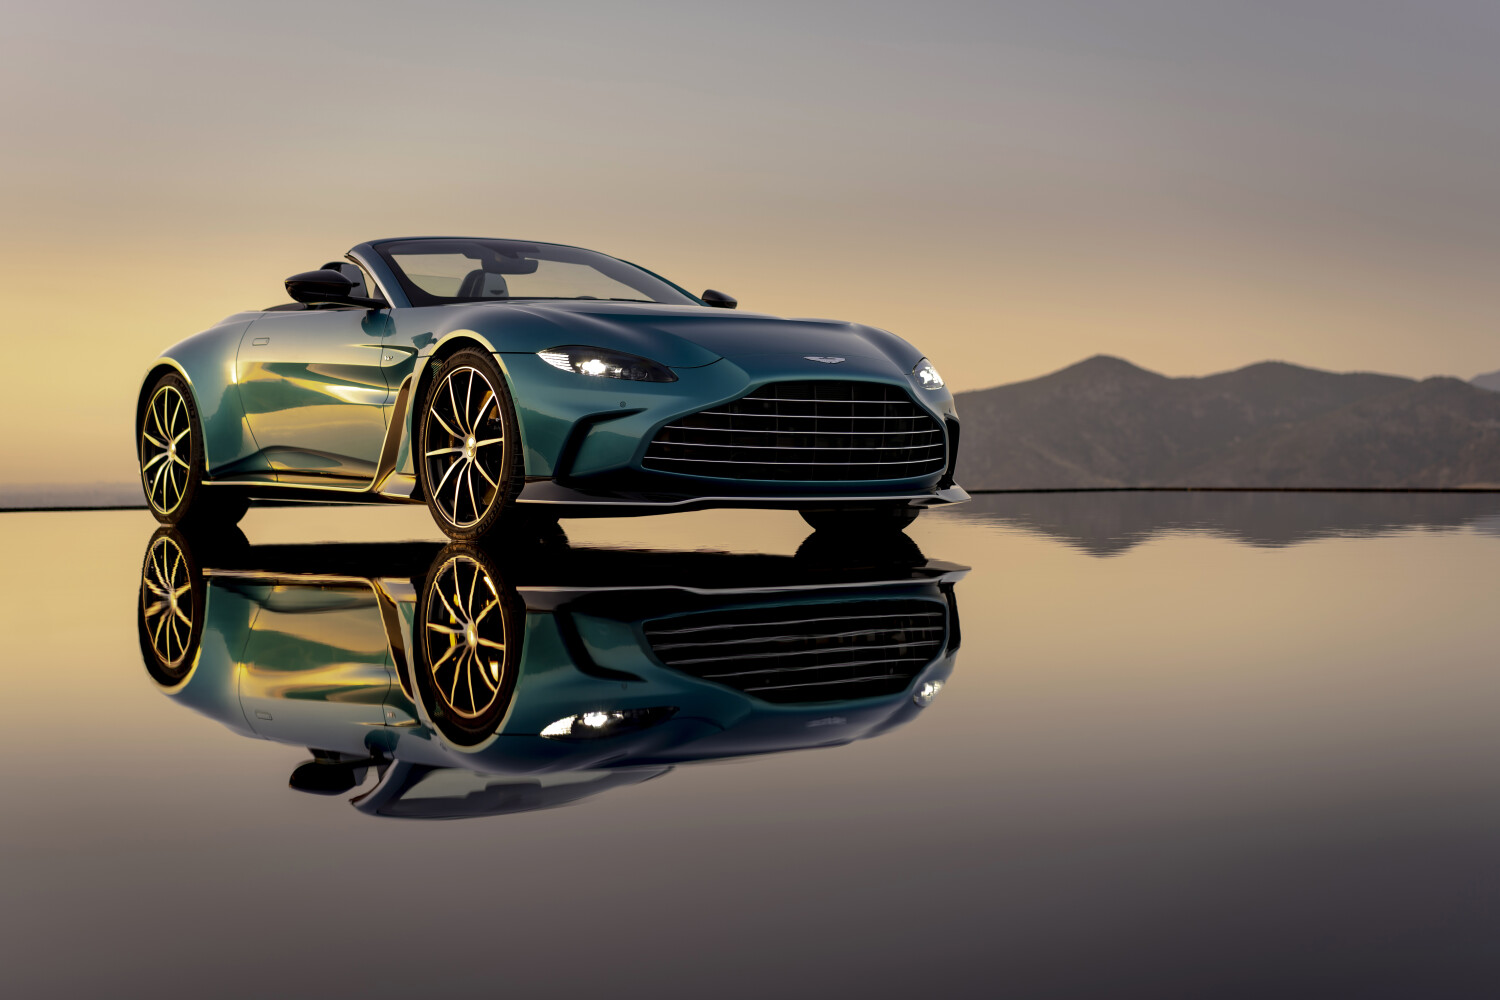 Aston Martin V12 Vantage Wallpapers